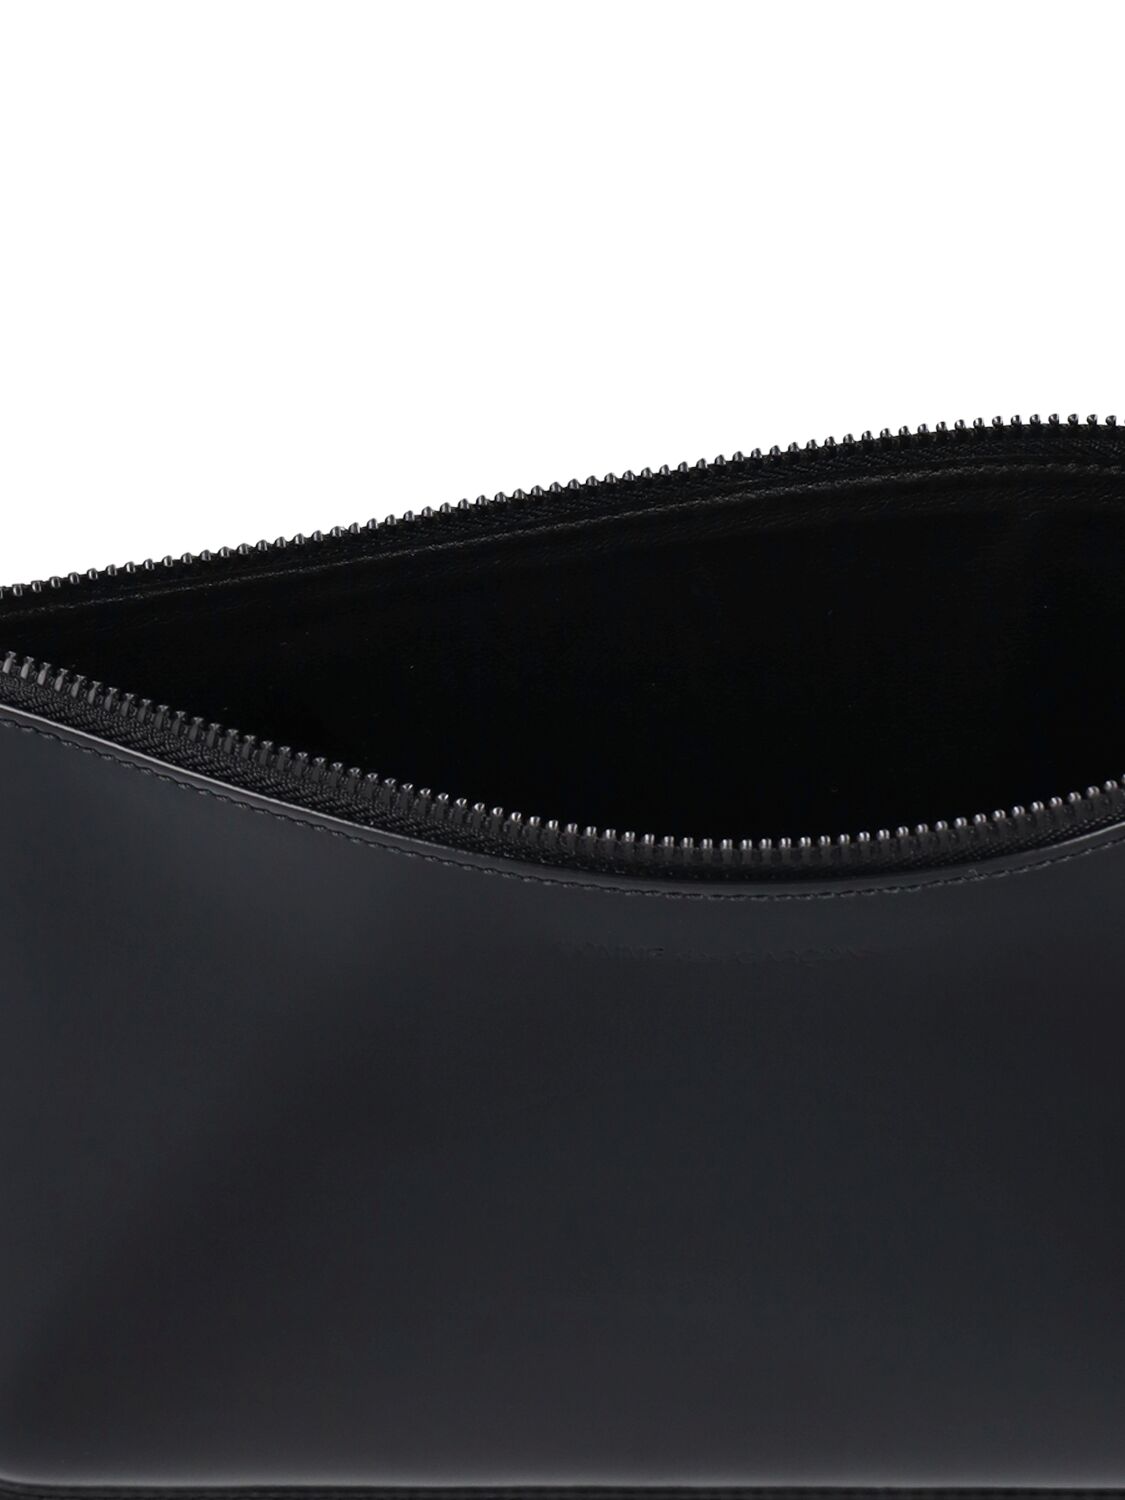 Shop Comme Des Garçons Zipper Medley Leather Pouch In Black